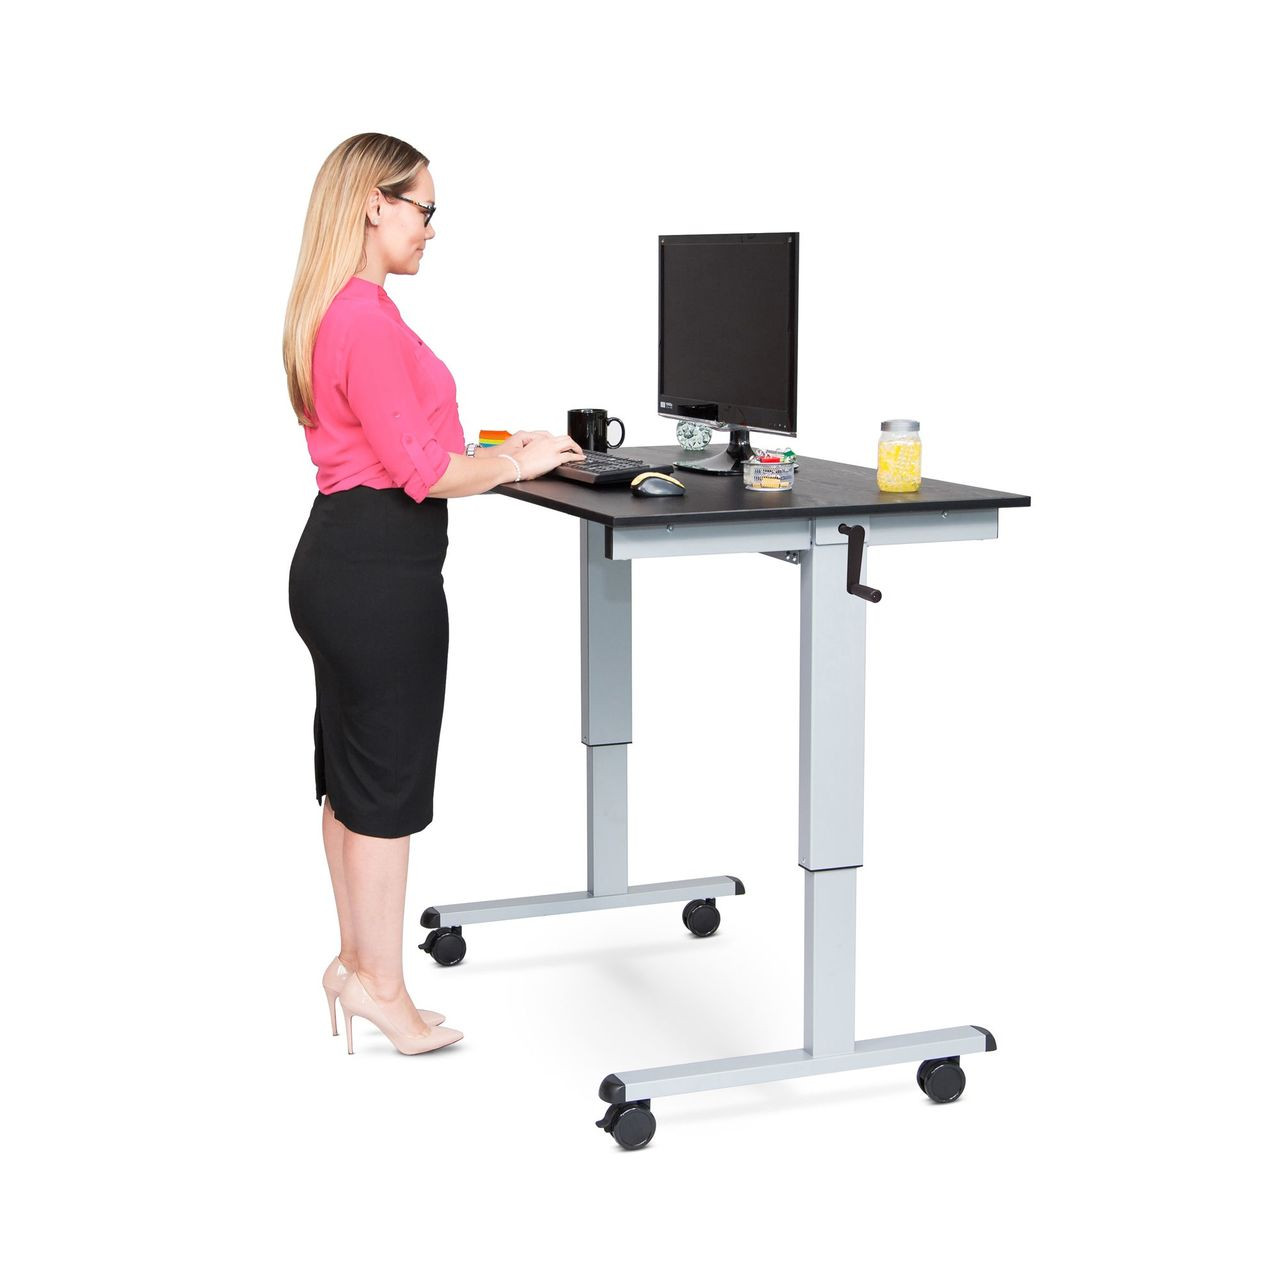 48" Crank Adjustable Stand Up Desk